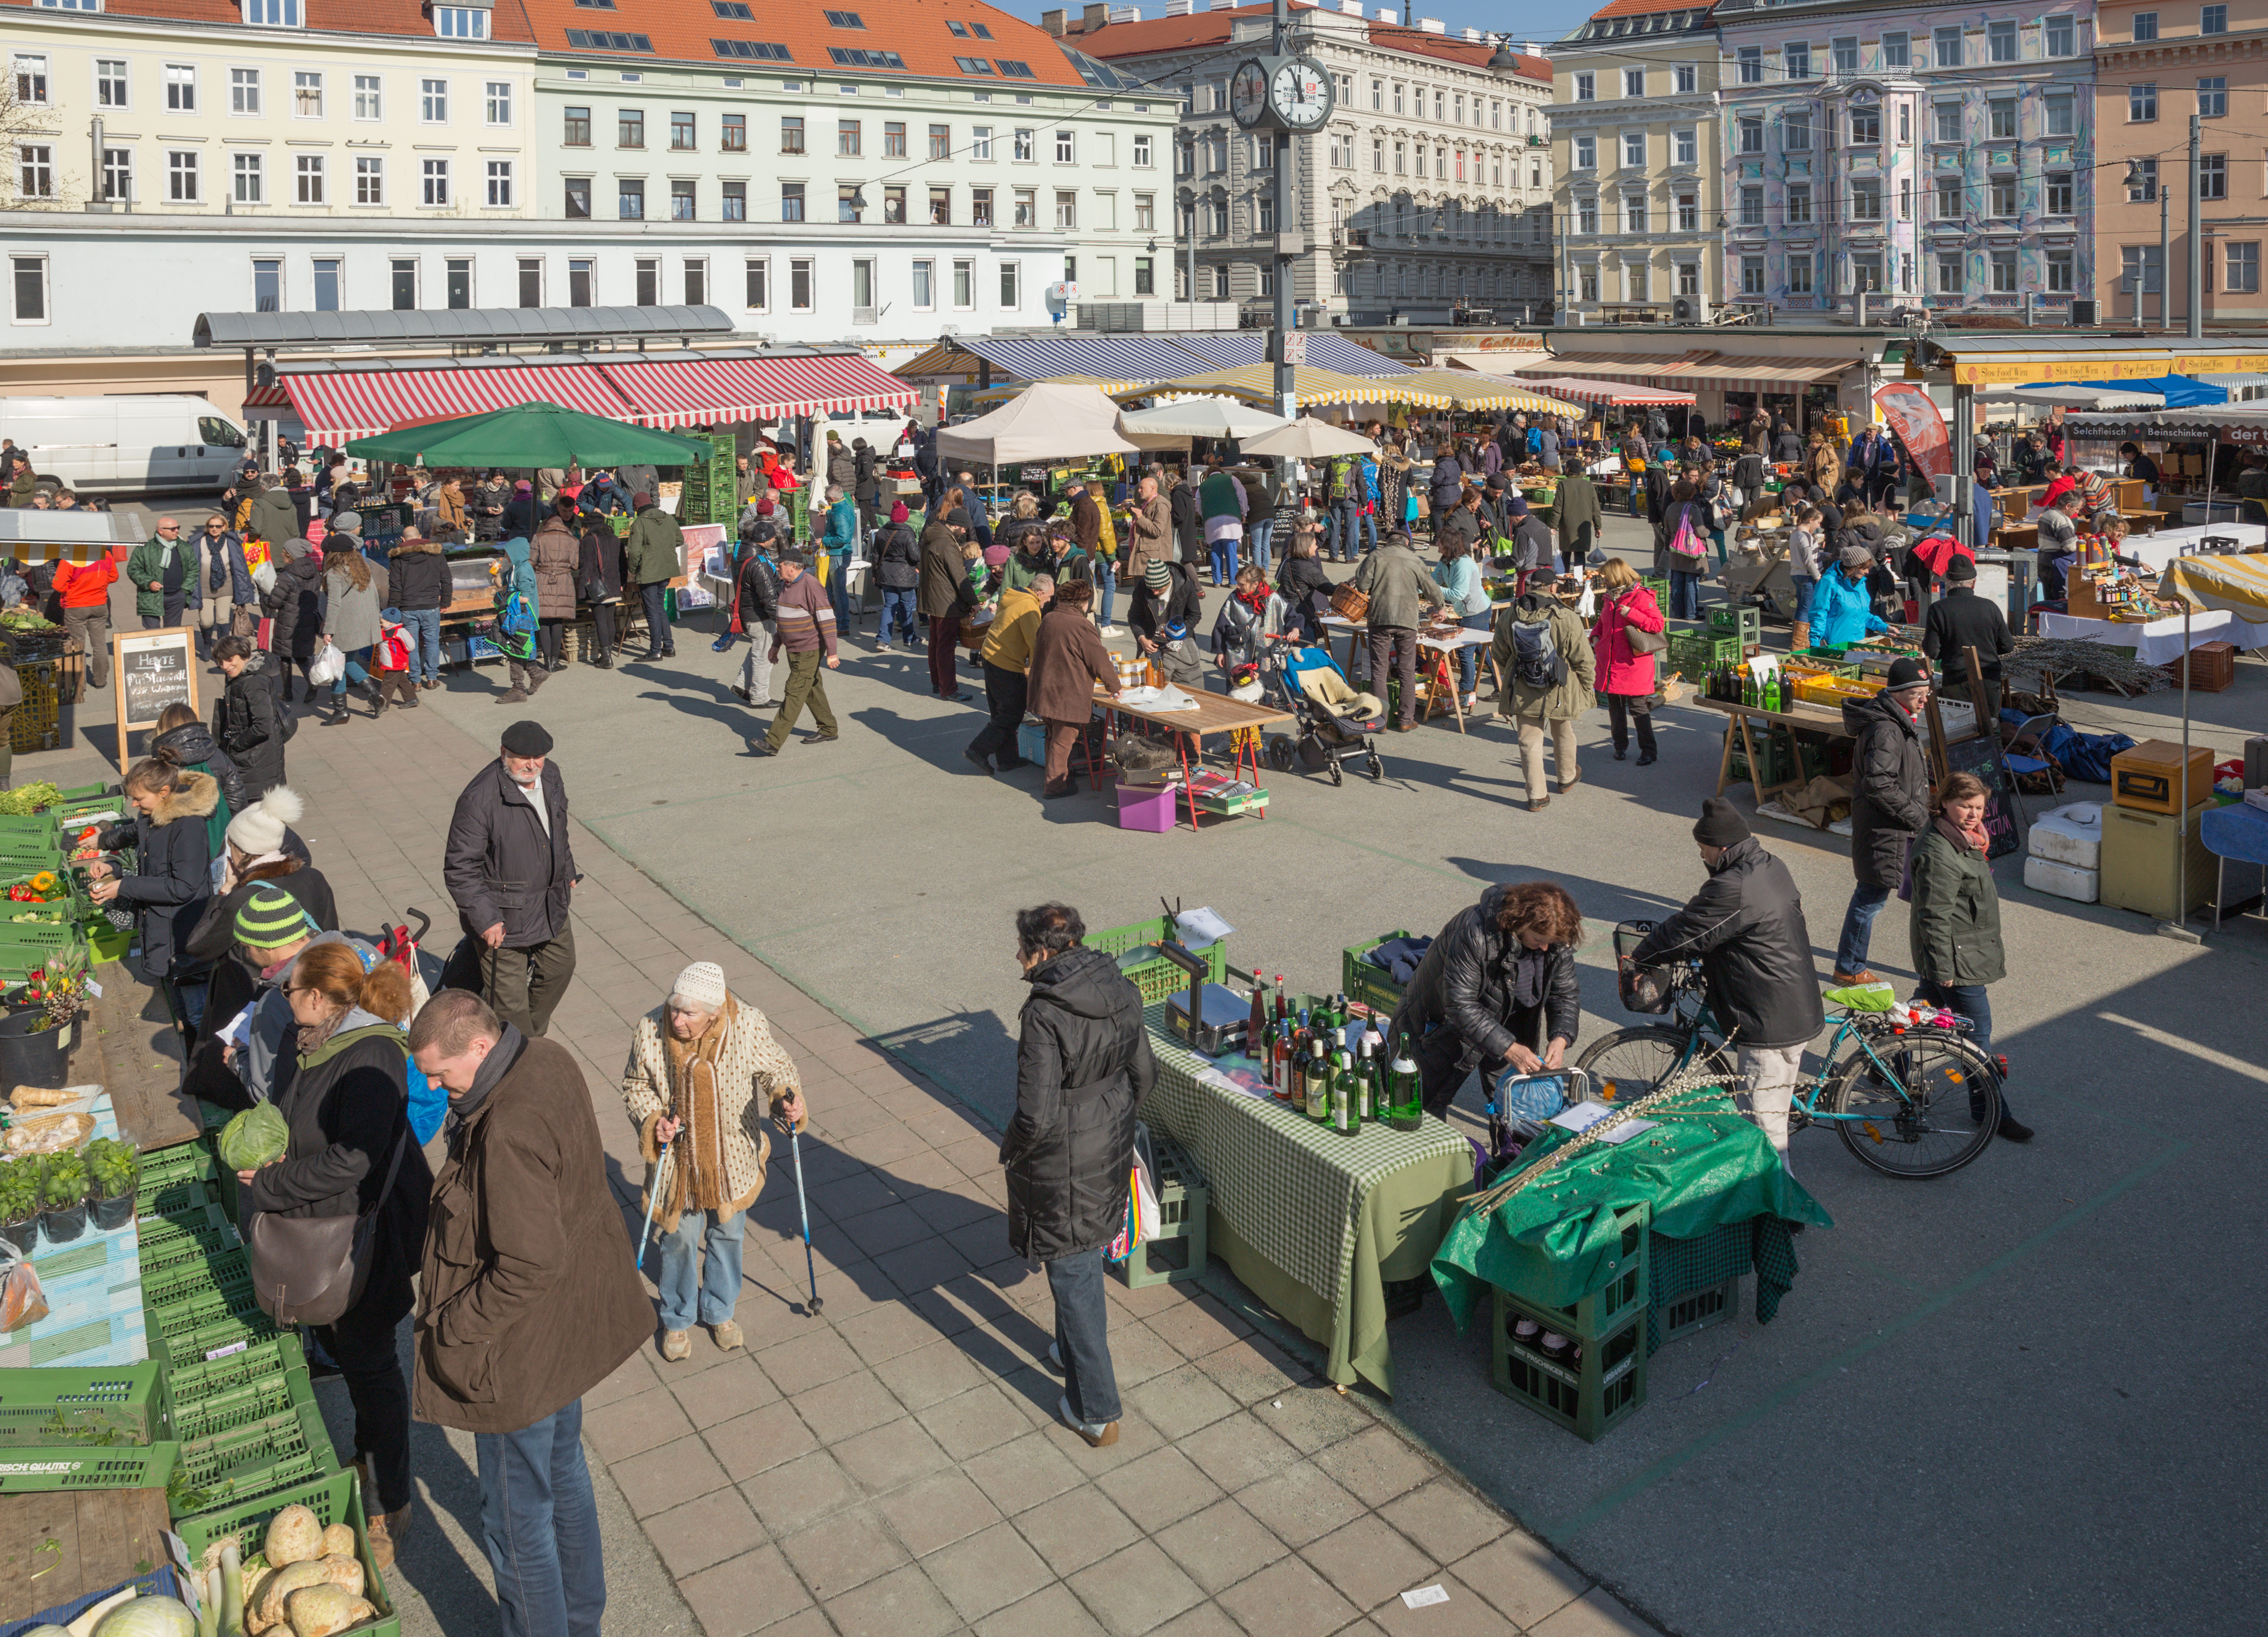 2015-02-21 Samstag am Karmelitermarkt Wien - 9383